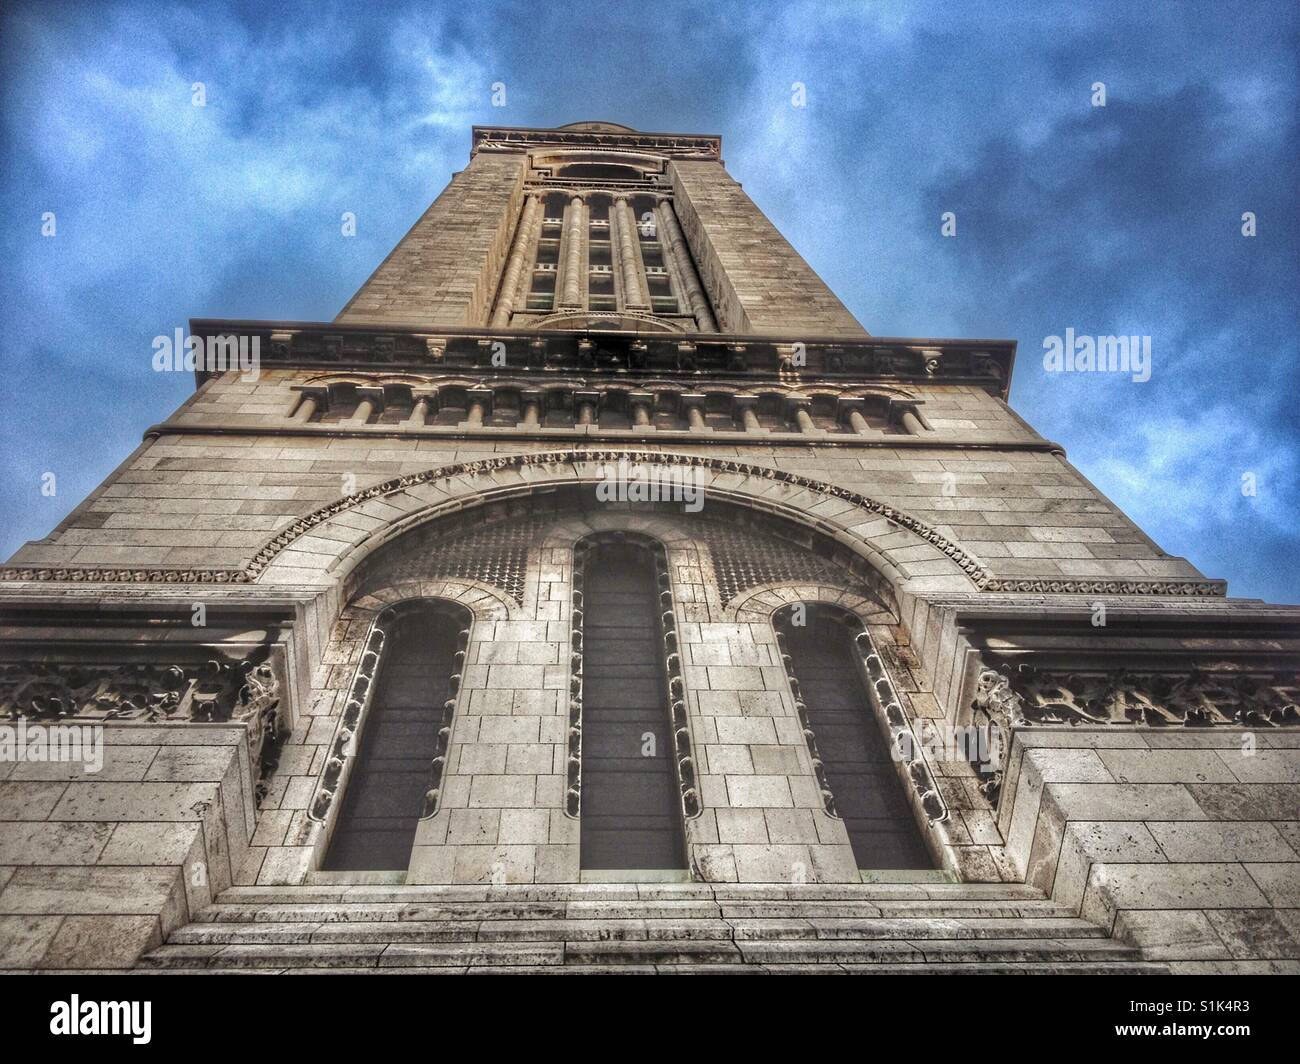 Tower at Sacre Coeur Basilica, Paris. Stock Photo